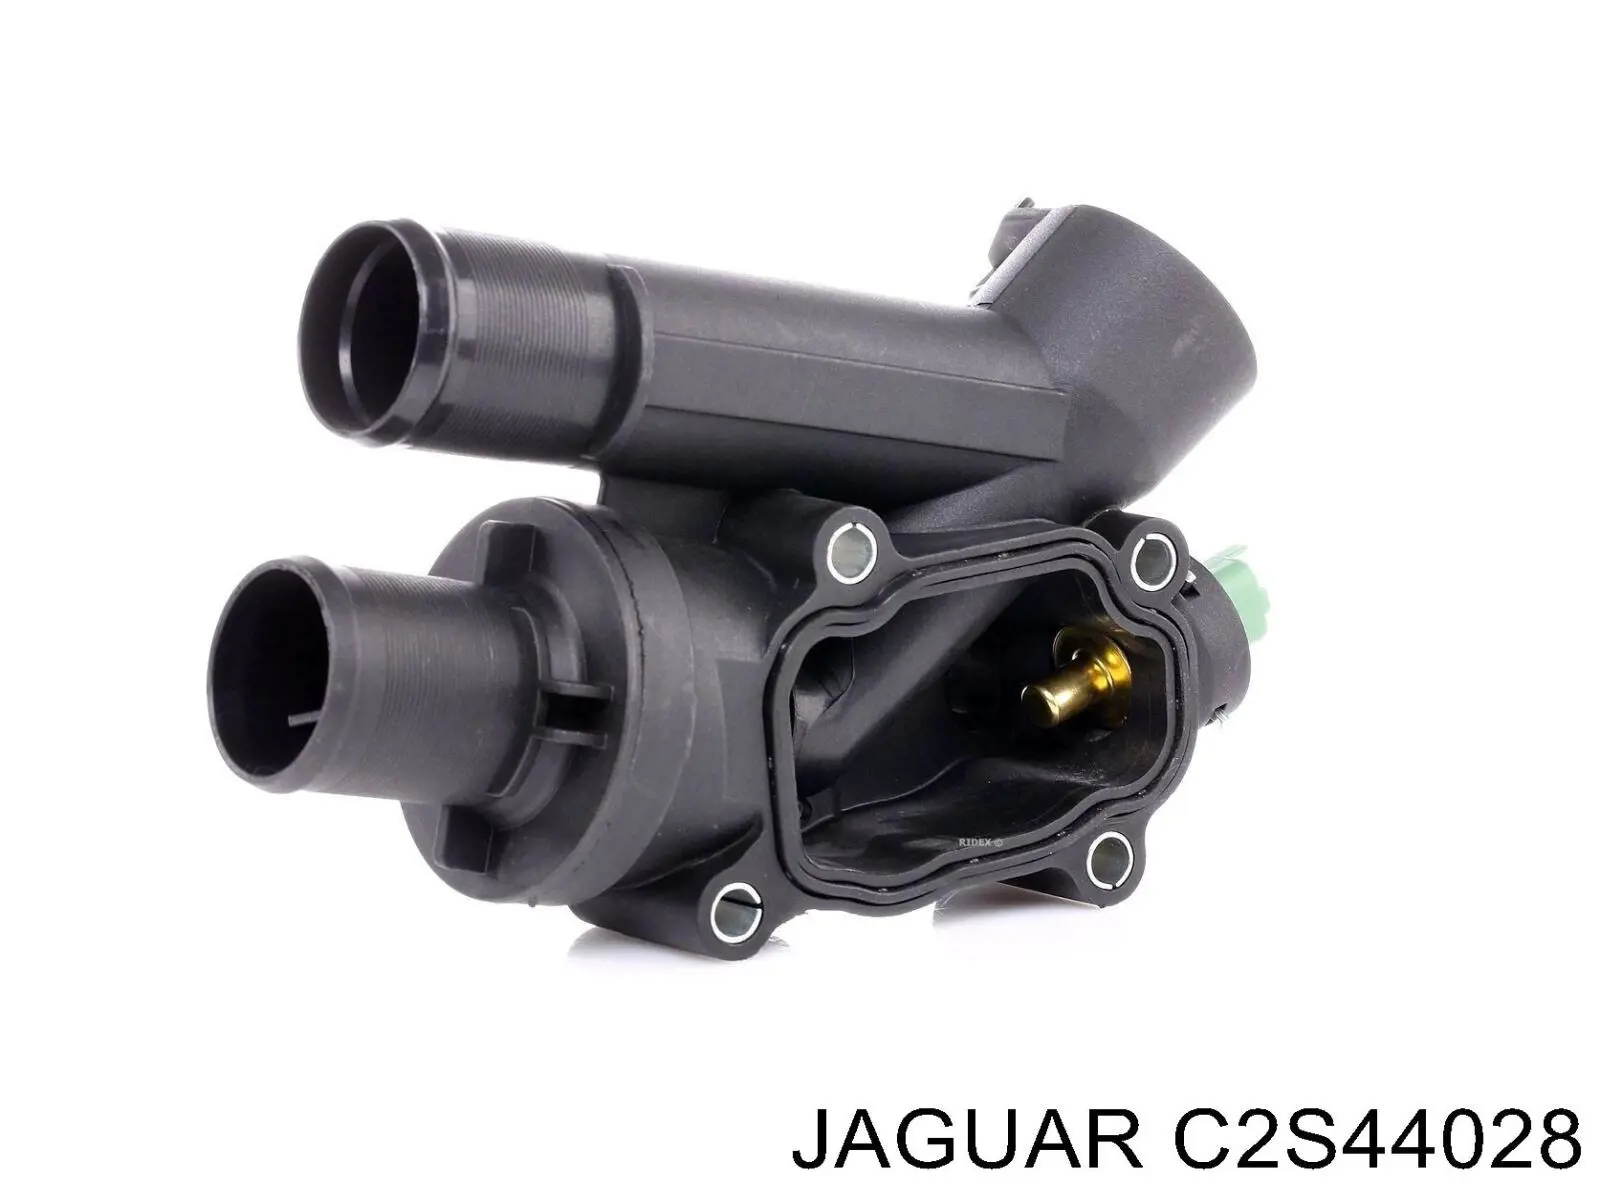 C2S44028 Jaguar termostato